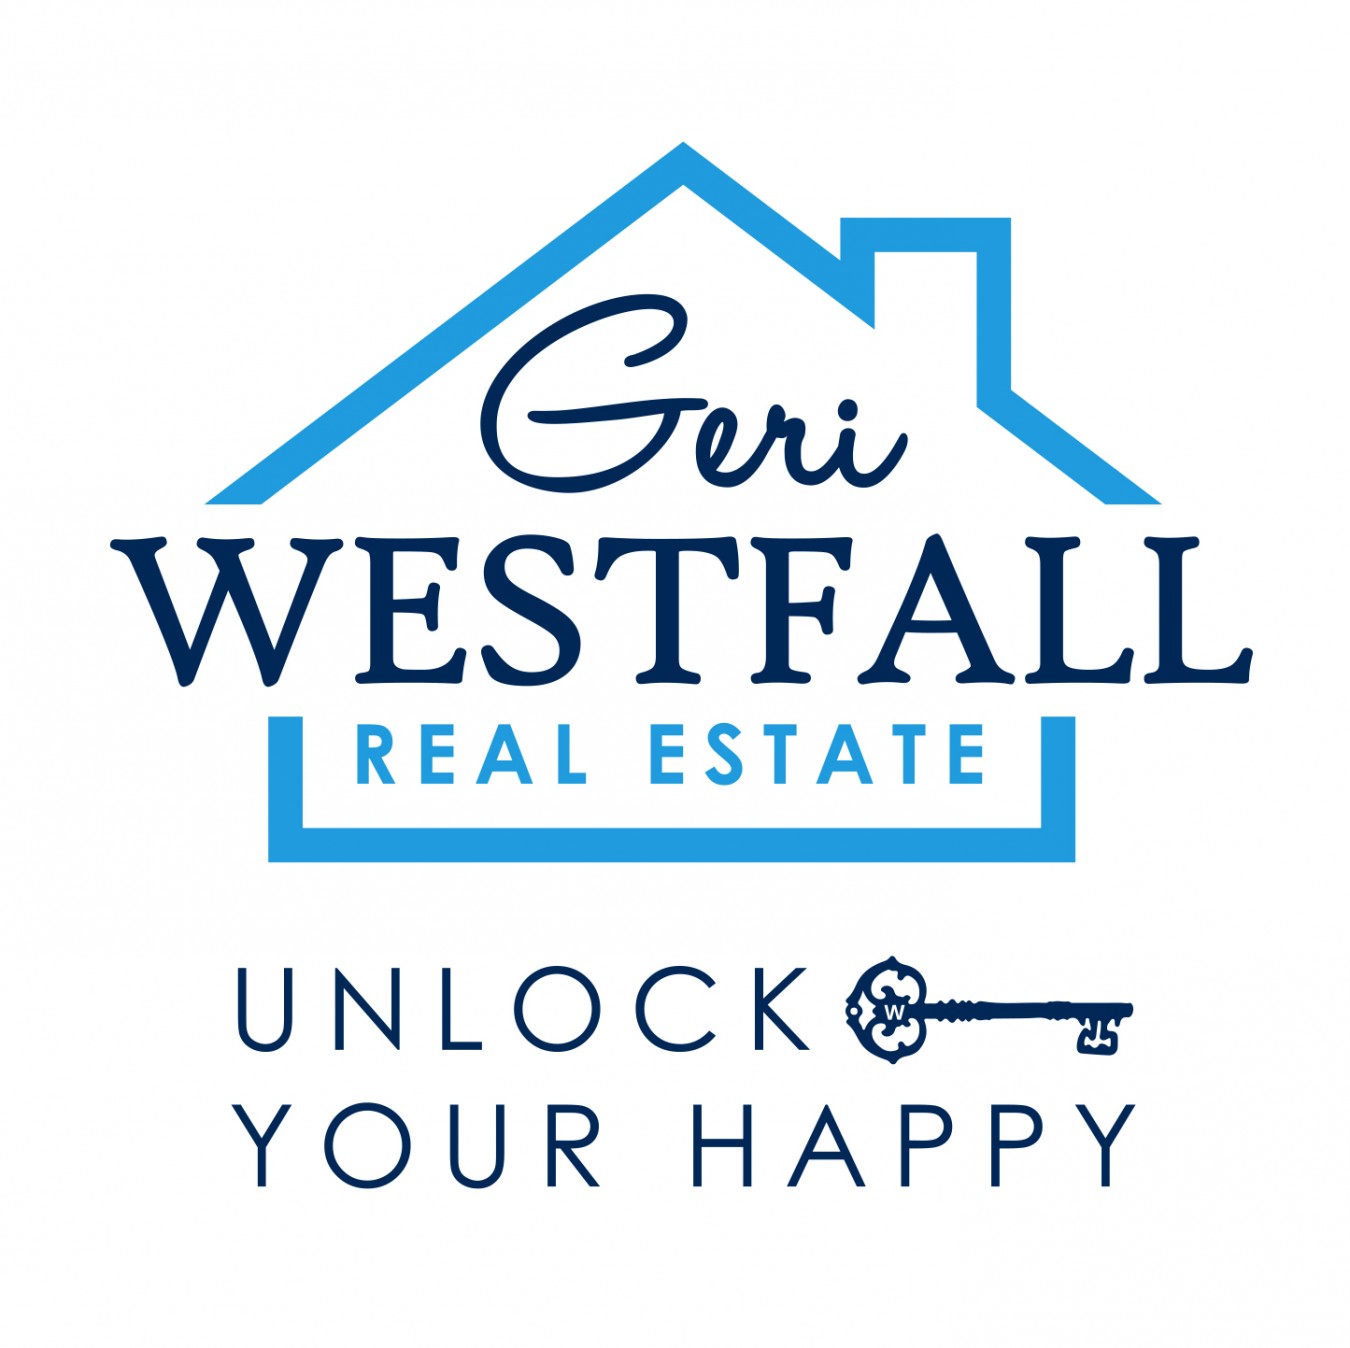 Geri Westfall Real Estate